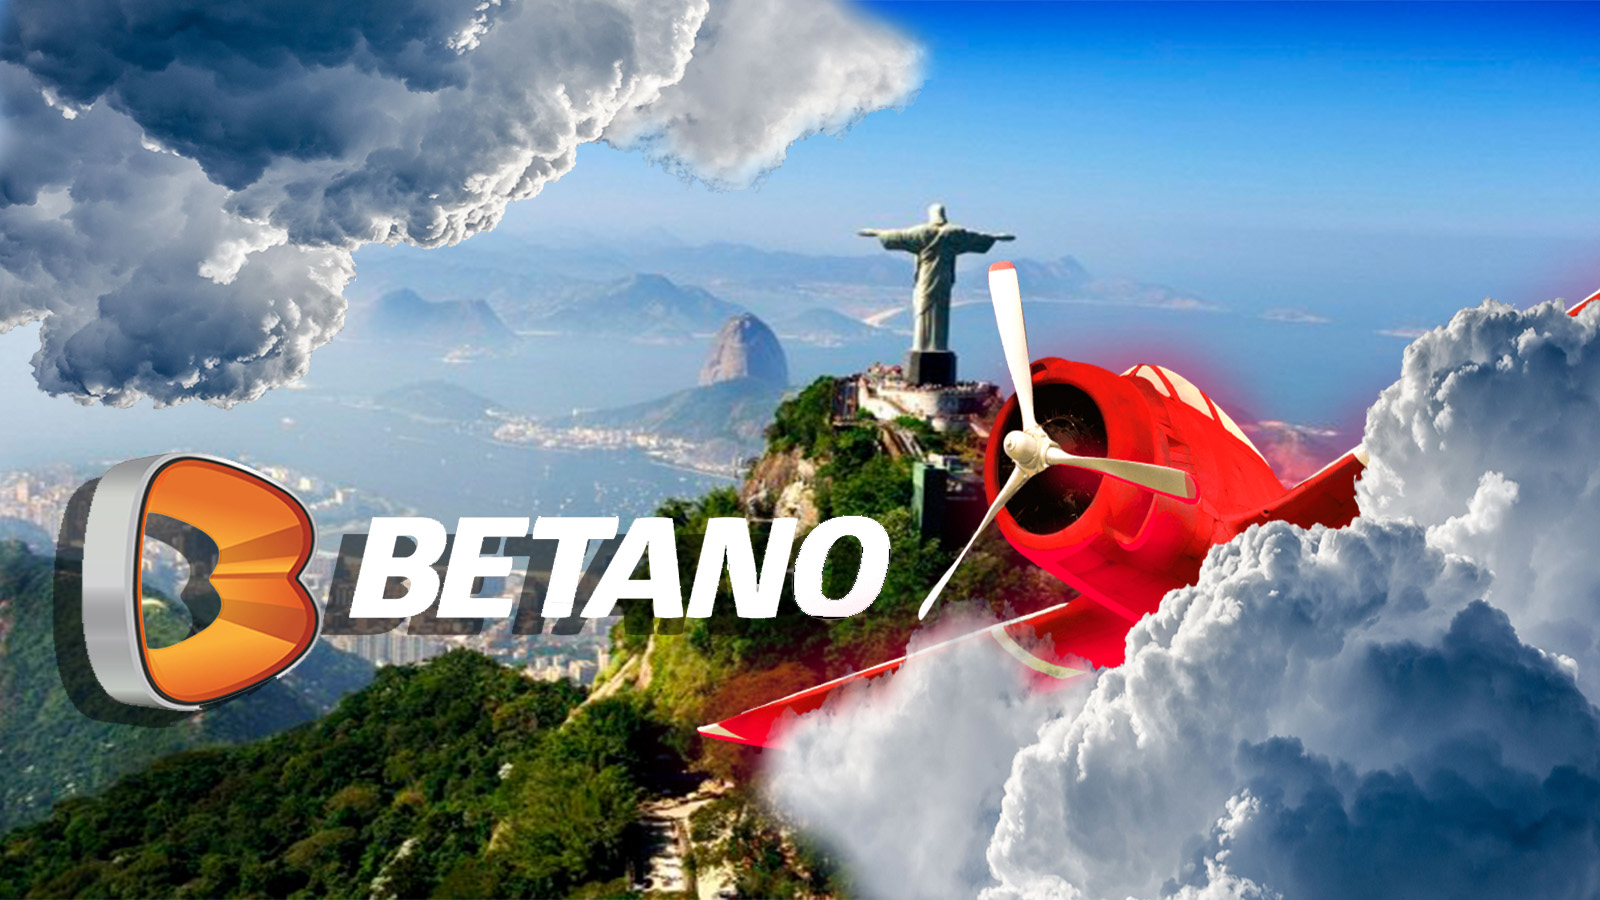 Aviator at Betano - A melhor solução para grandes ganhos.